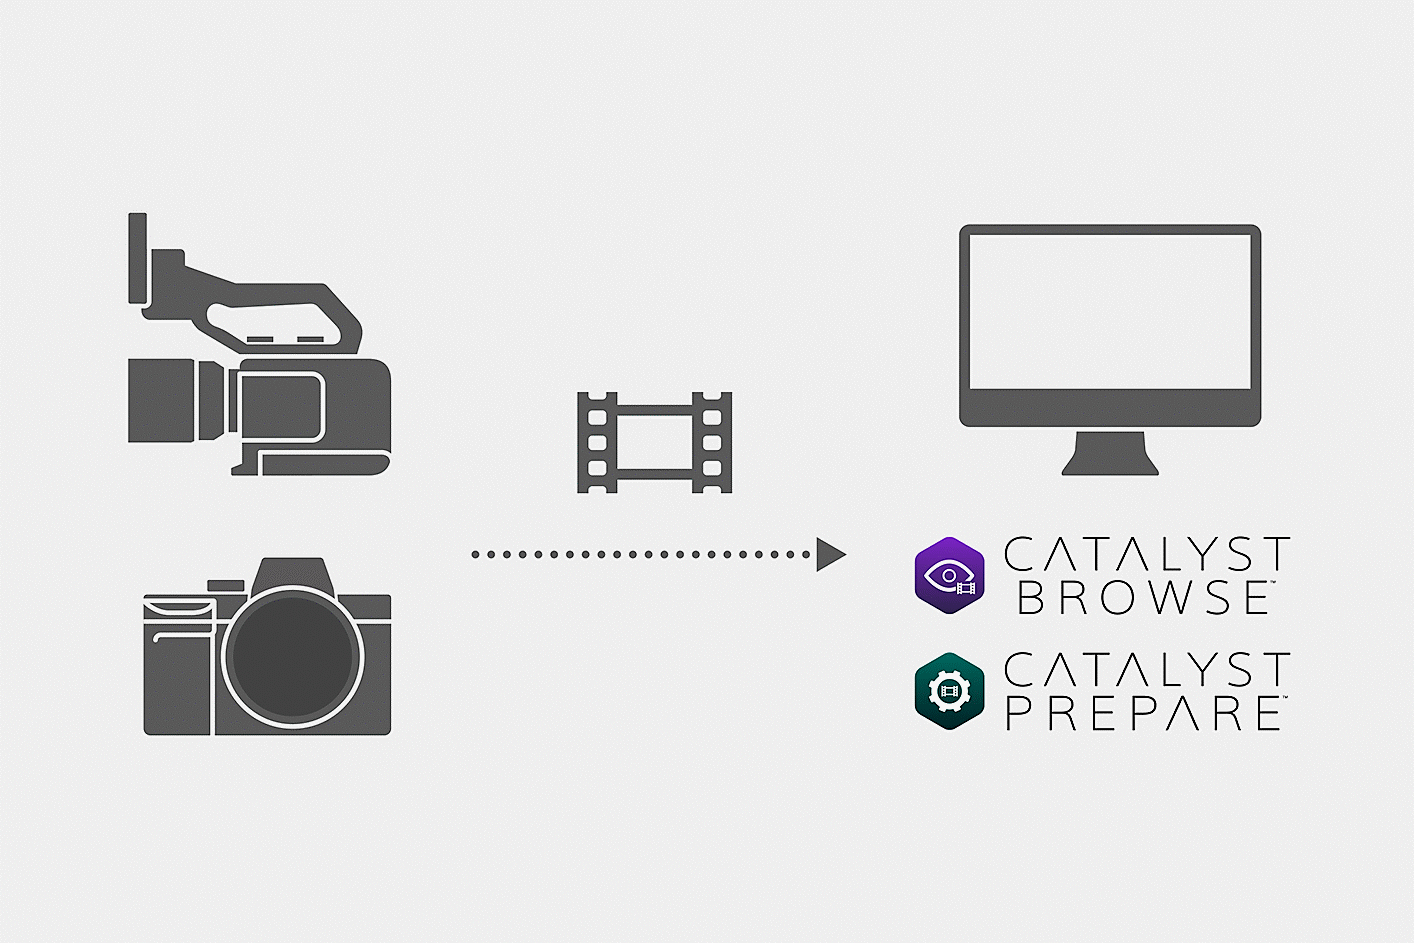 示意圖顯示如何將使用相機拍攝的影片檔案載入 Catalyst Browser 或 Catalyst Prepare